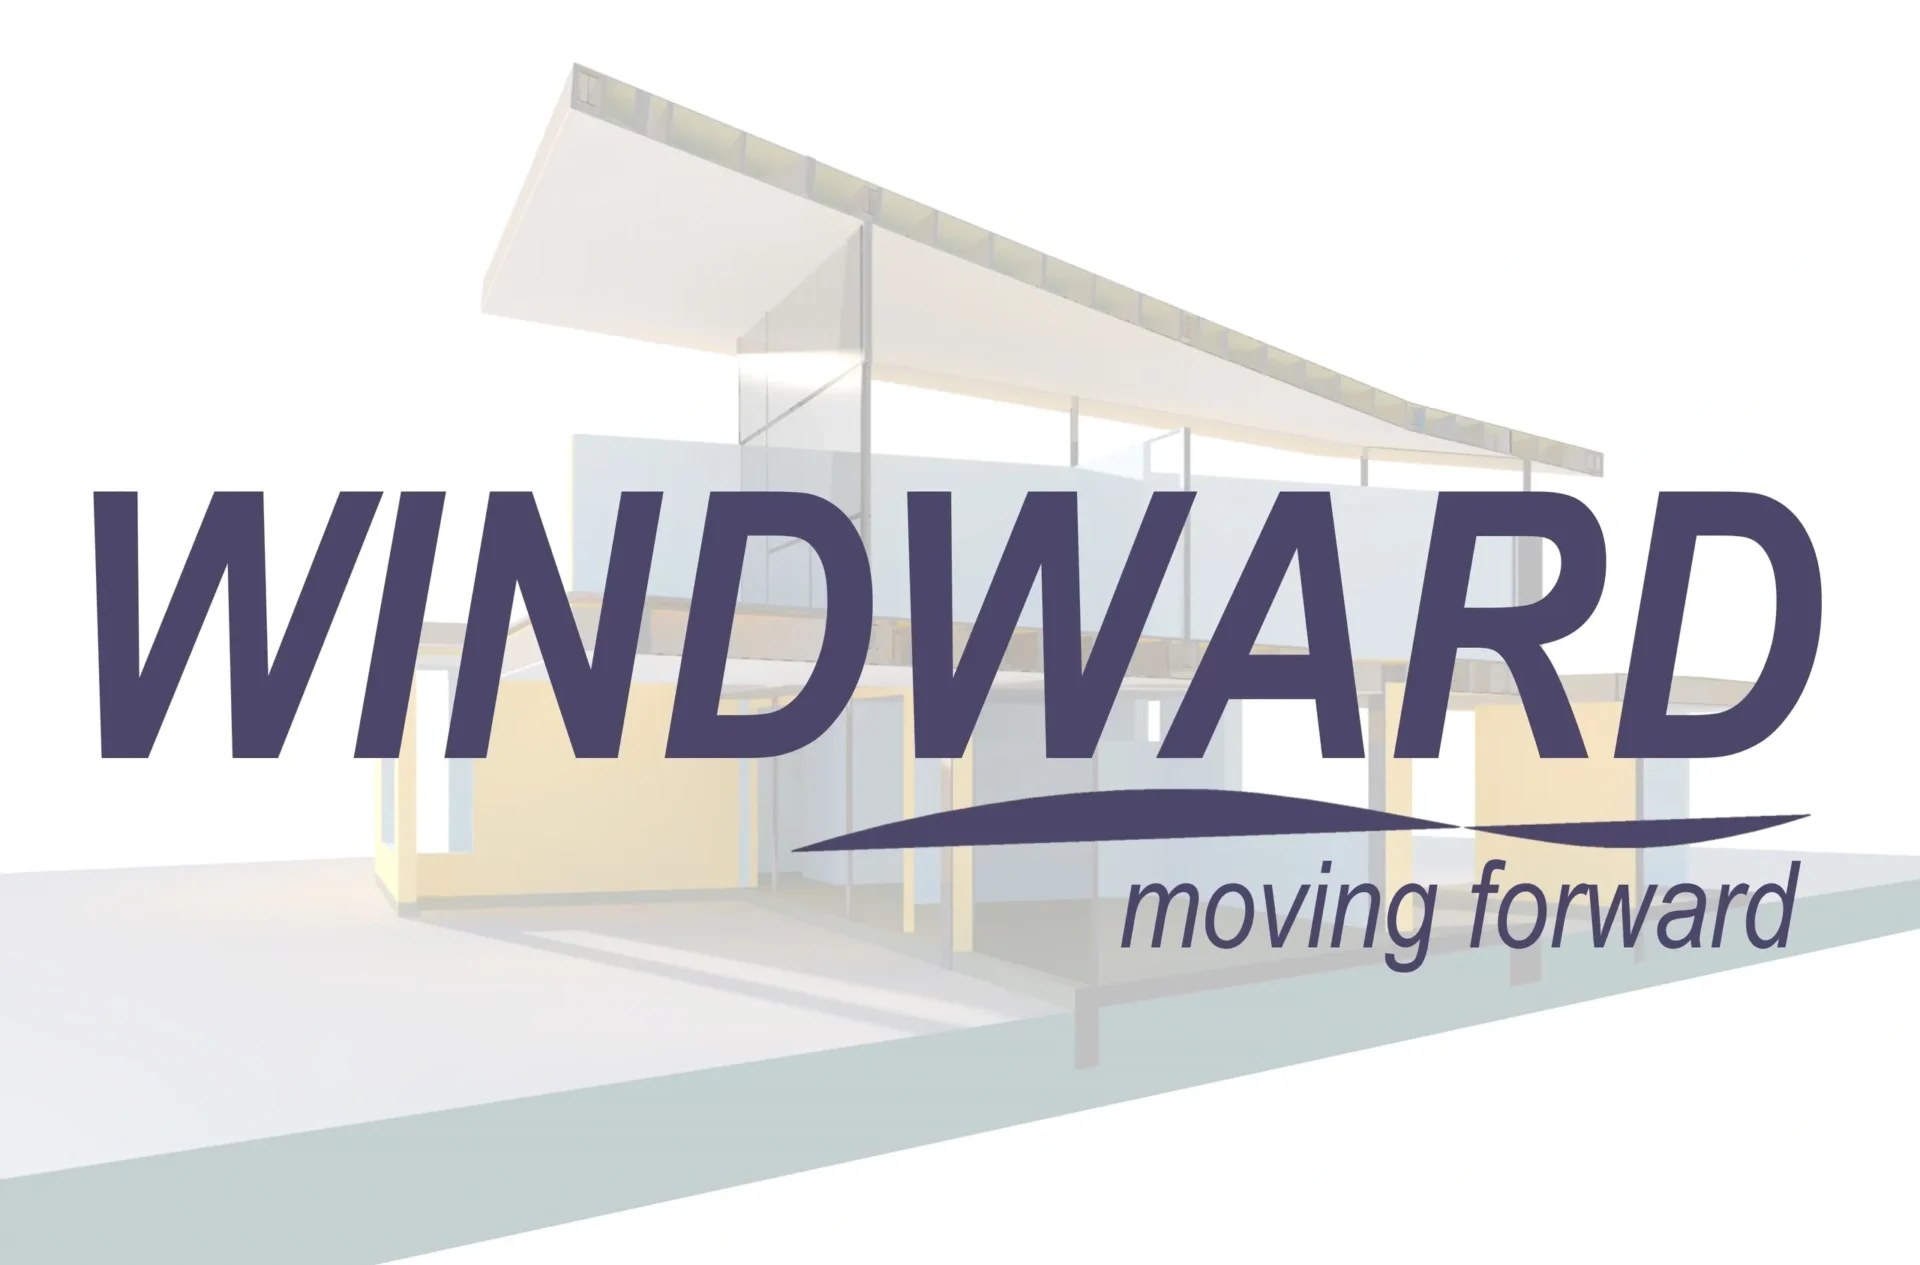 Windward Moving Forward Large